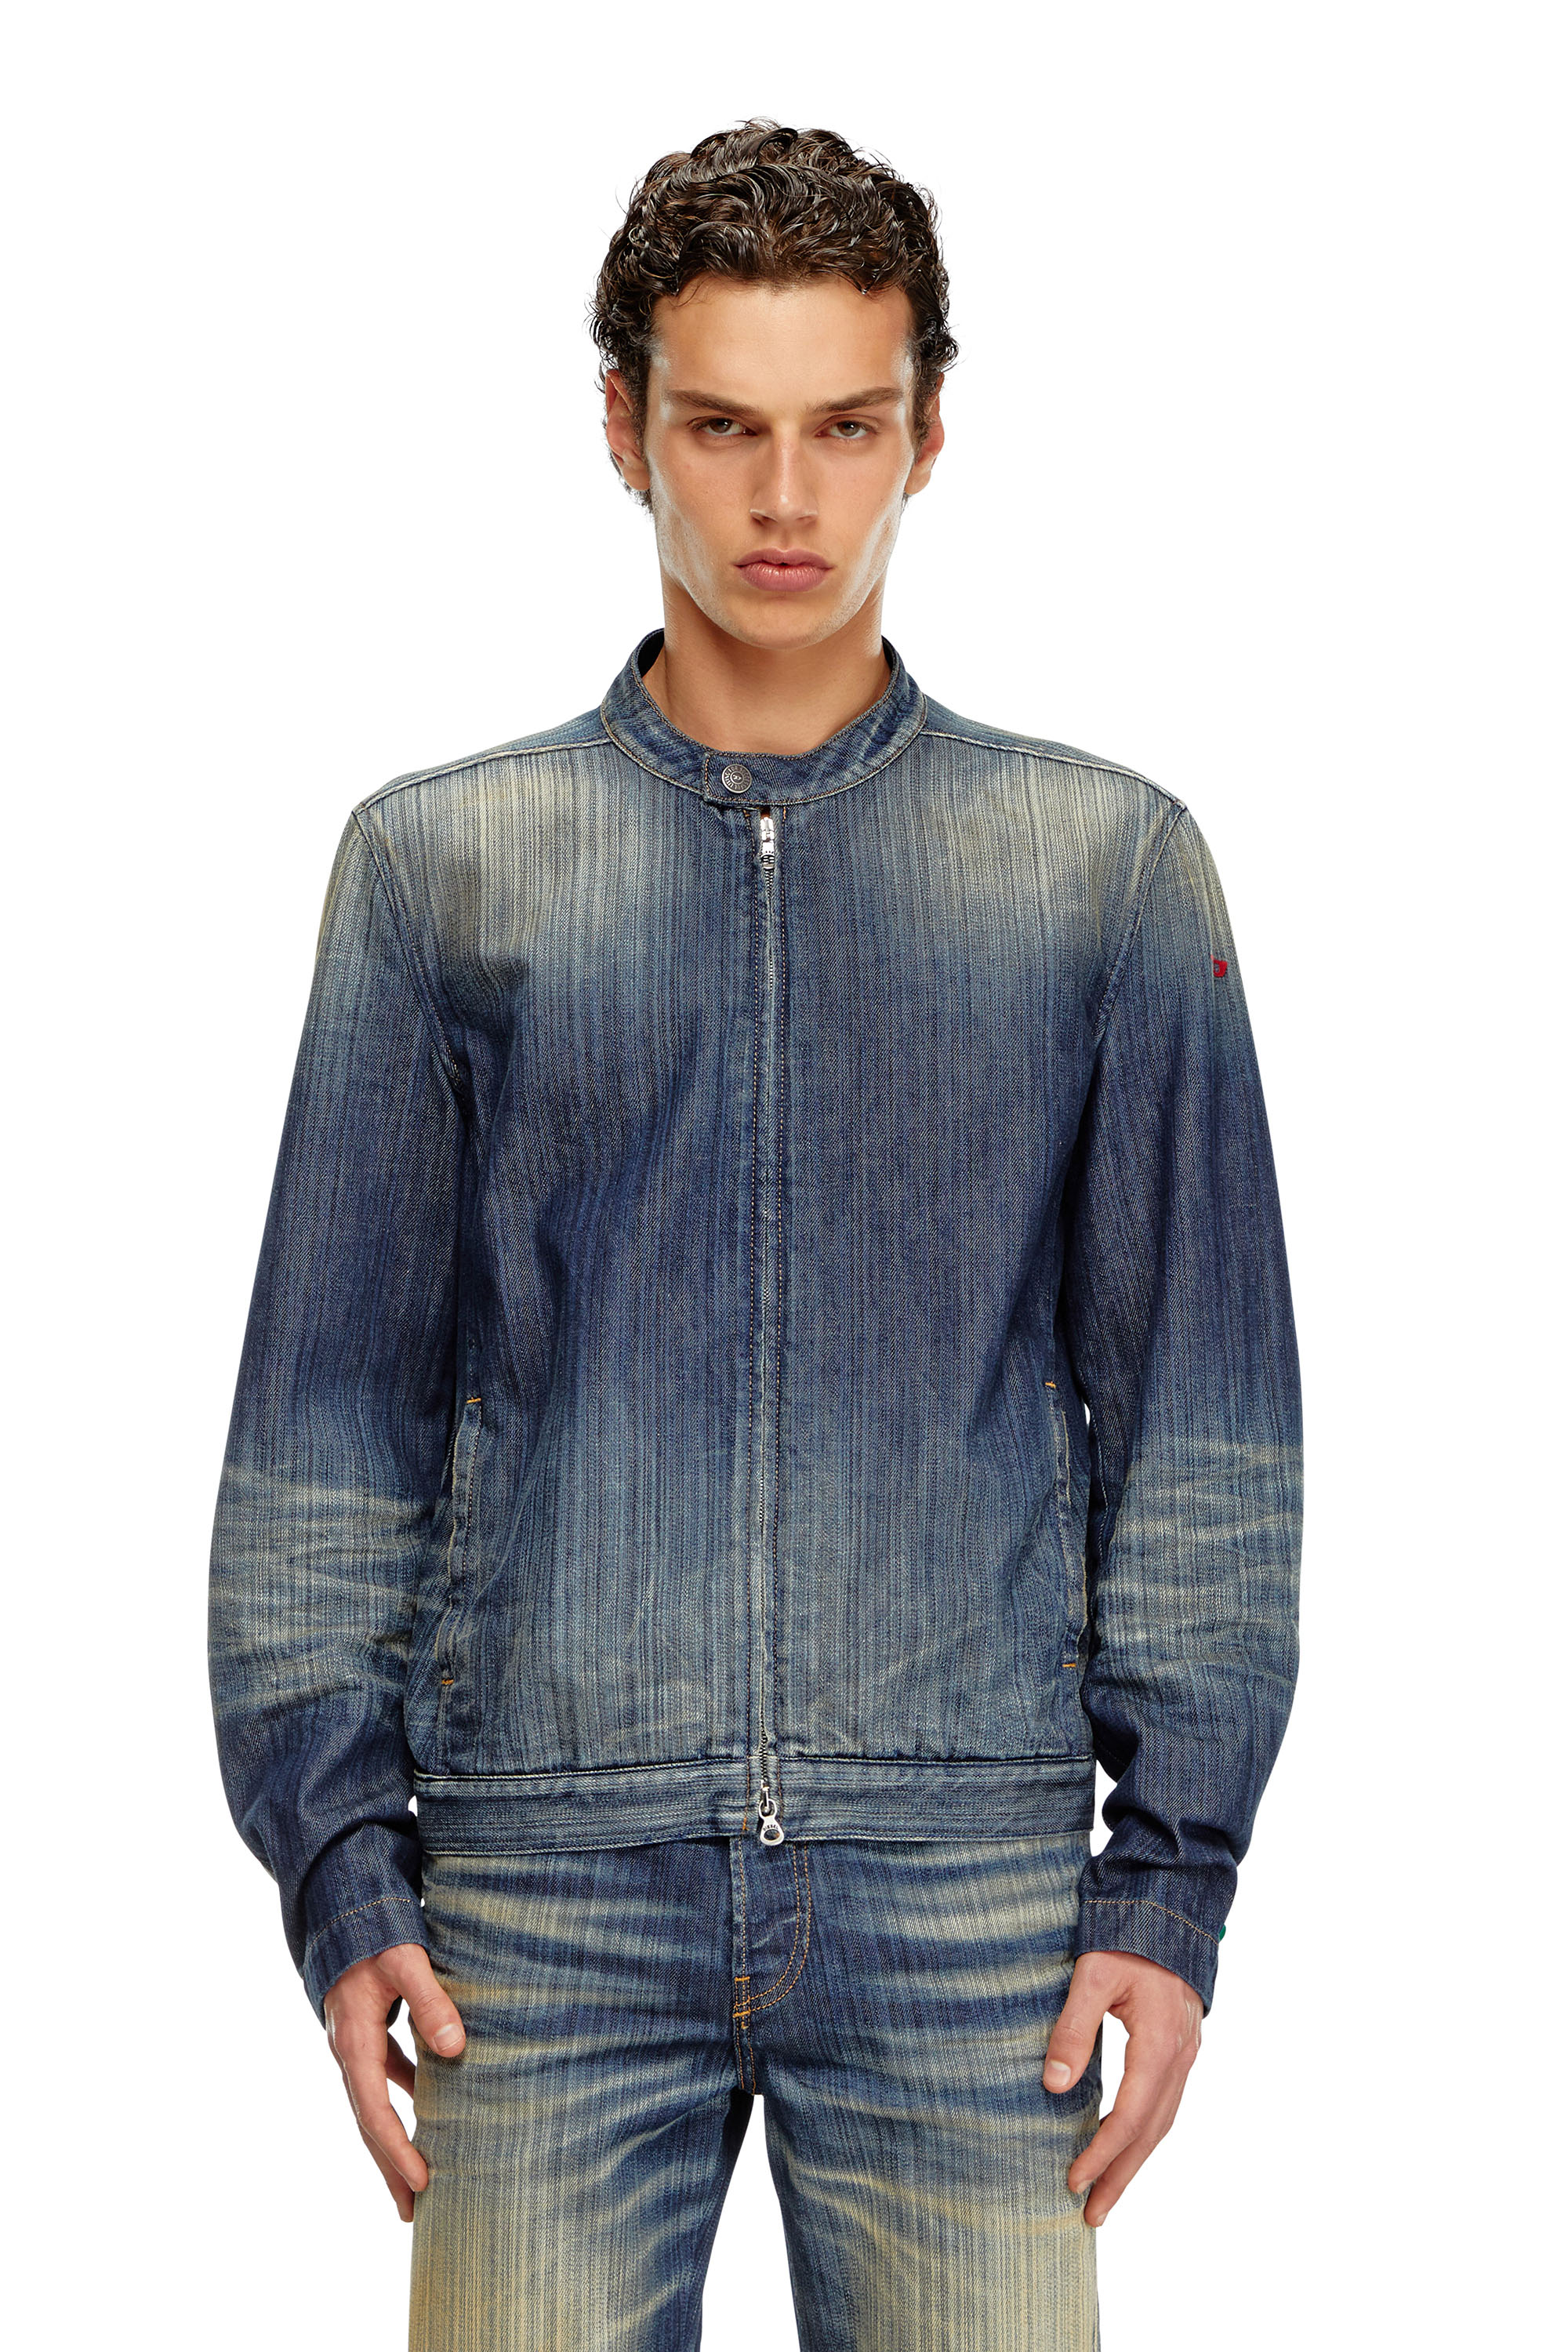 Diesel - D-GLORY, Man Moto jacket in streaky denim in Blue - Image 6